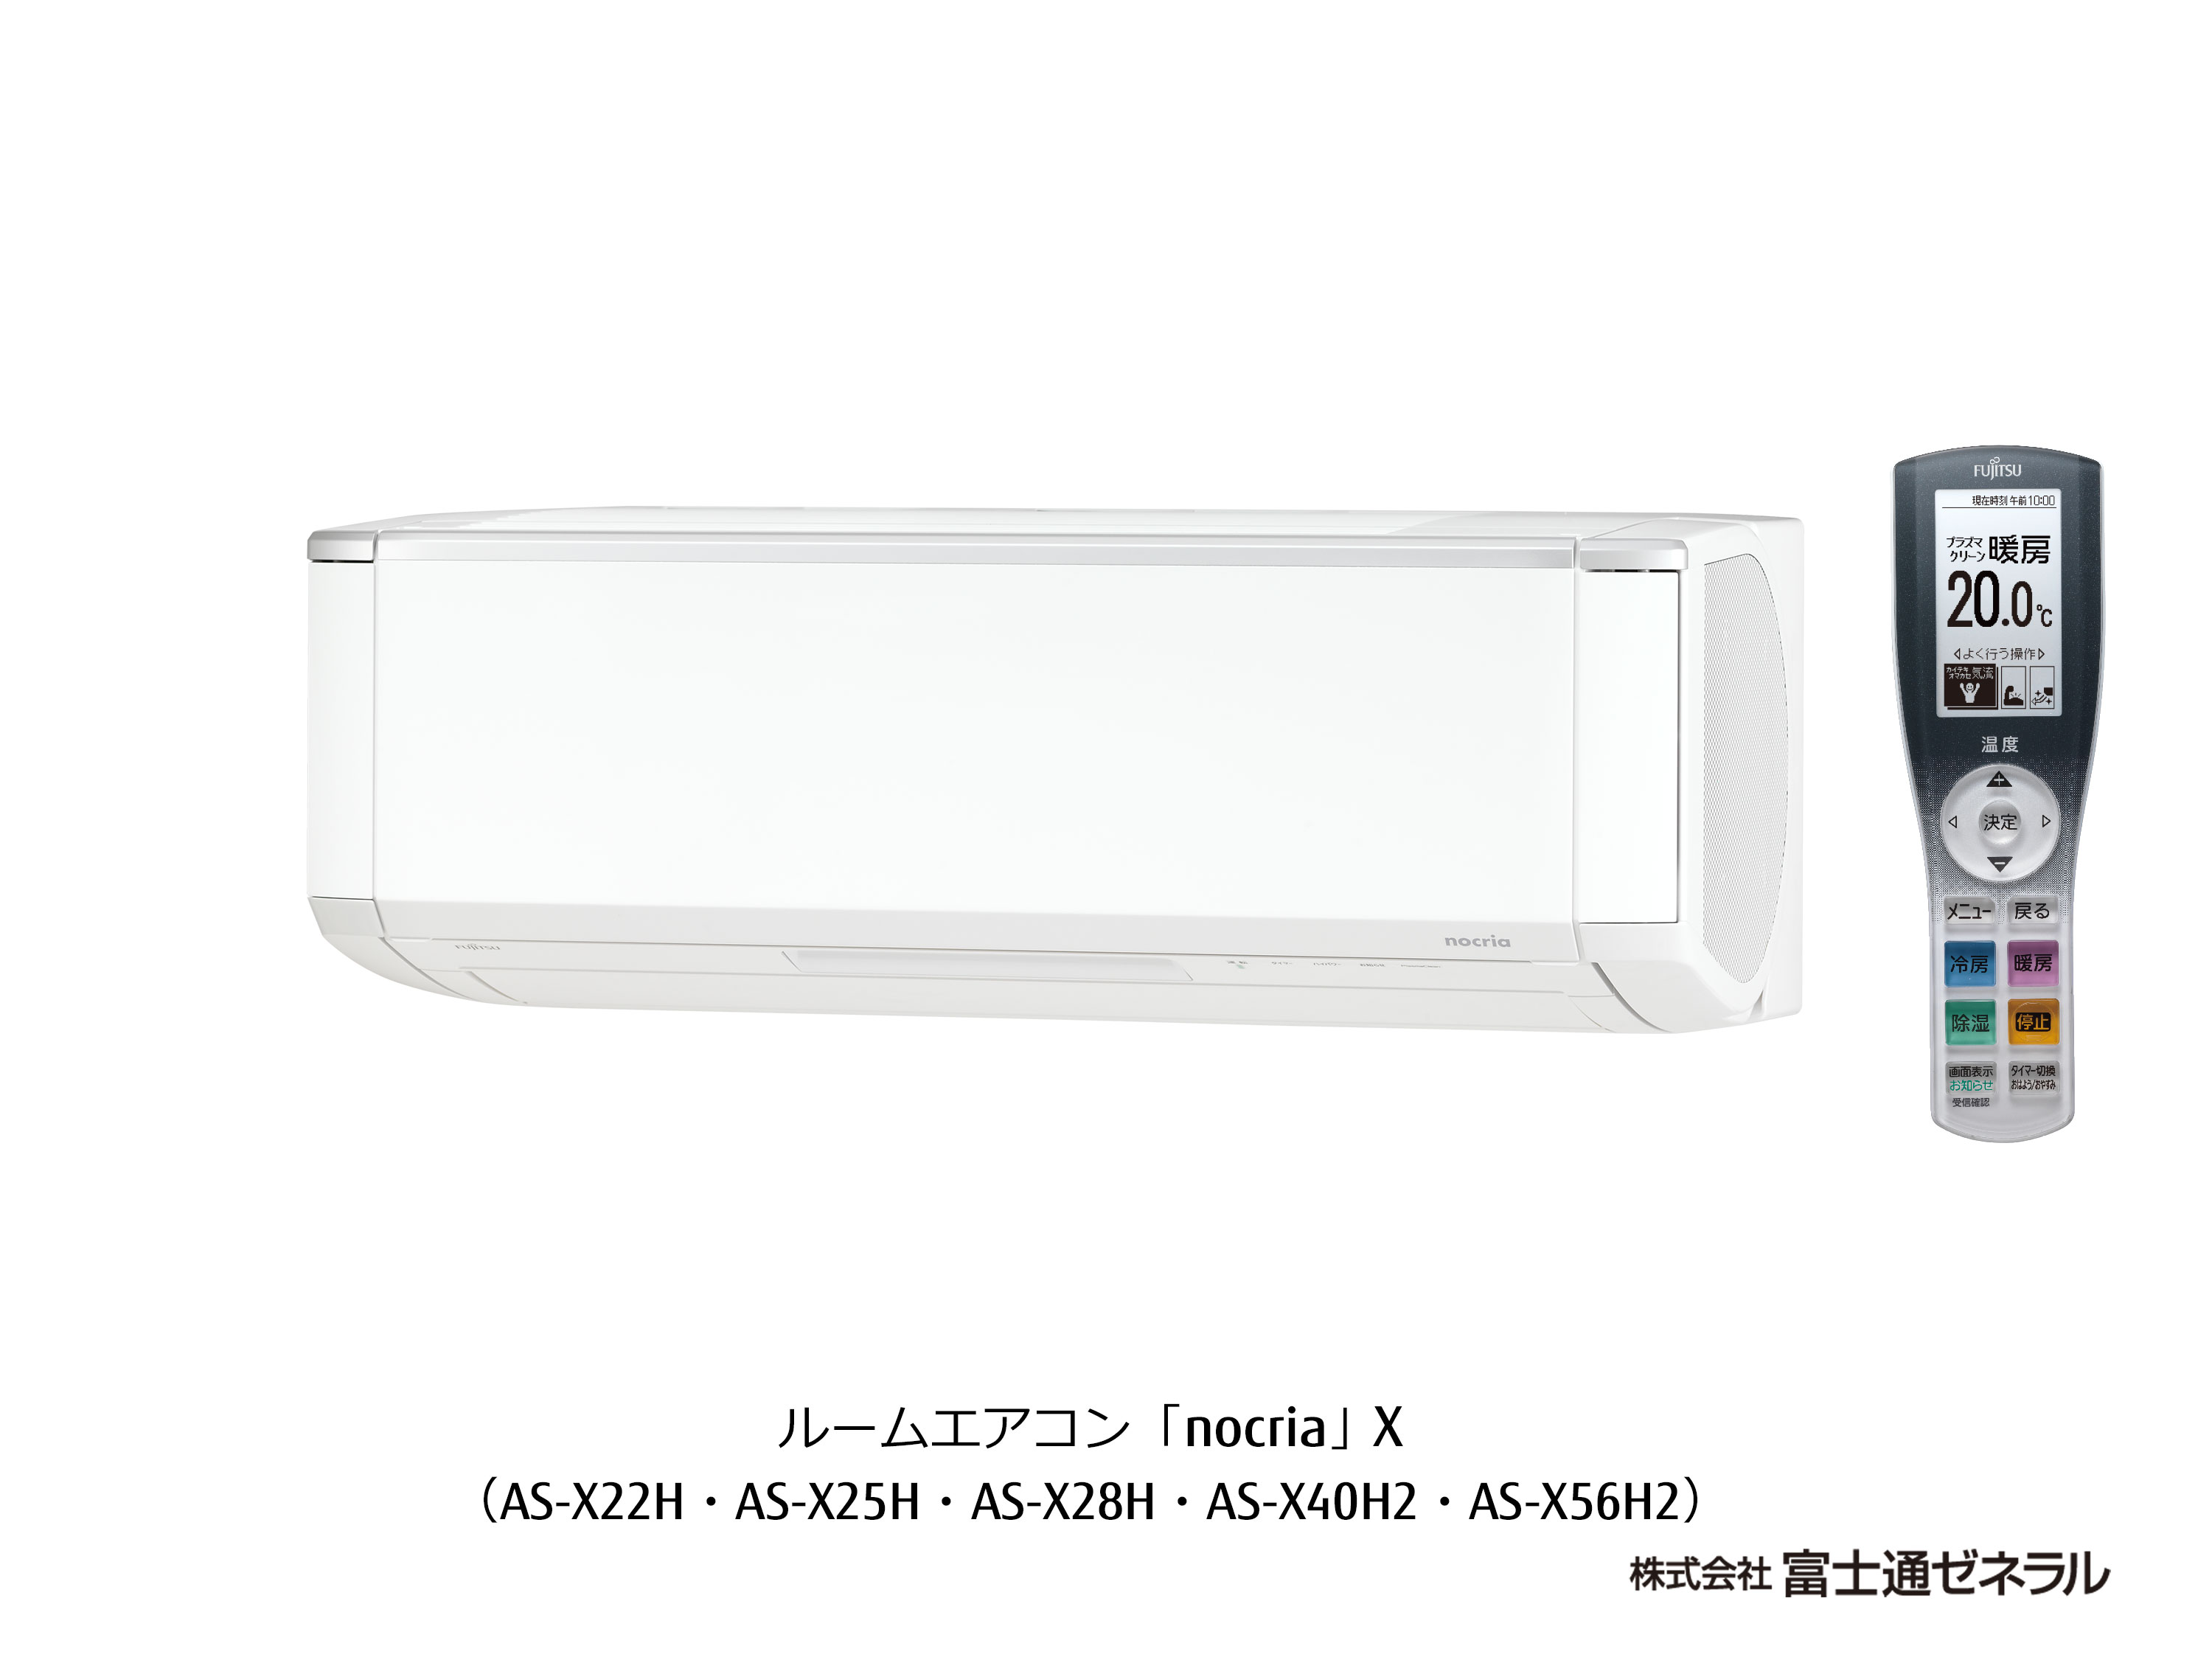 冷暖房/空調 エアコン AS-X22H スペック 2018年 エアコン nocria®X - 富士通ゼネラル JP